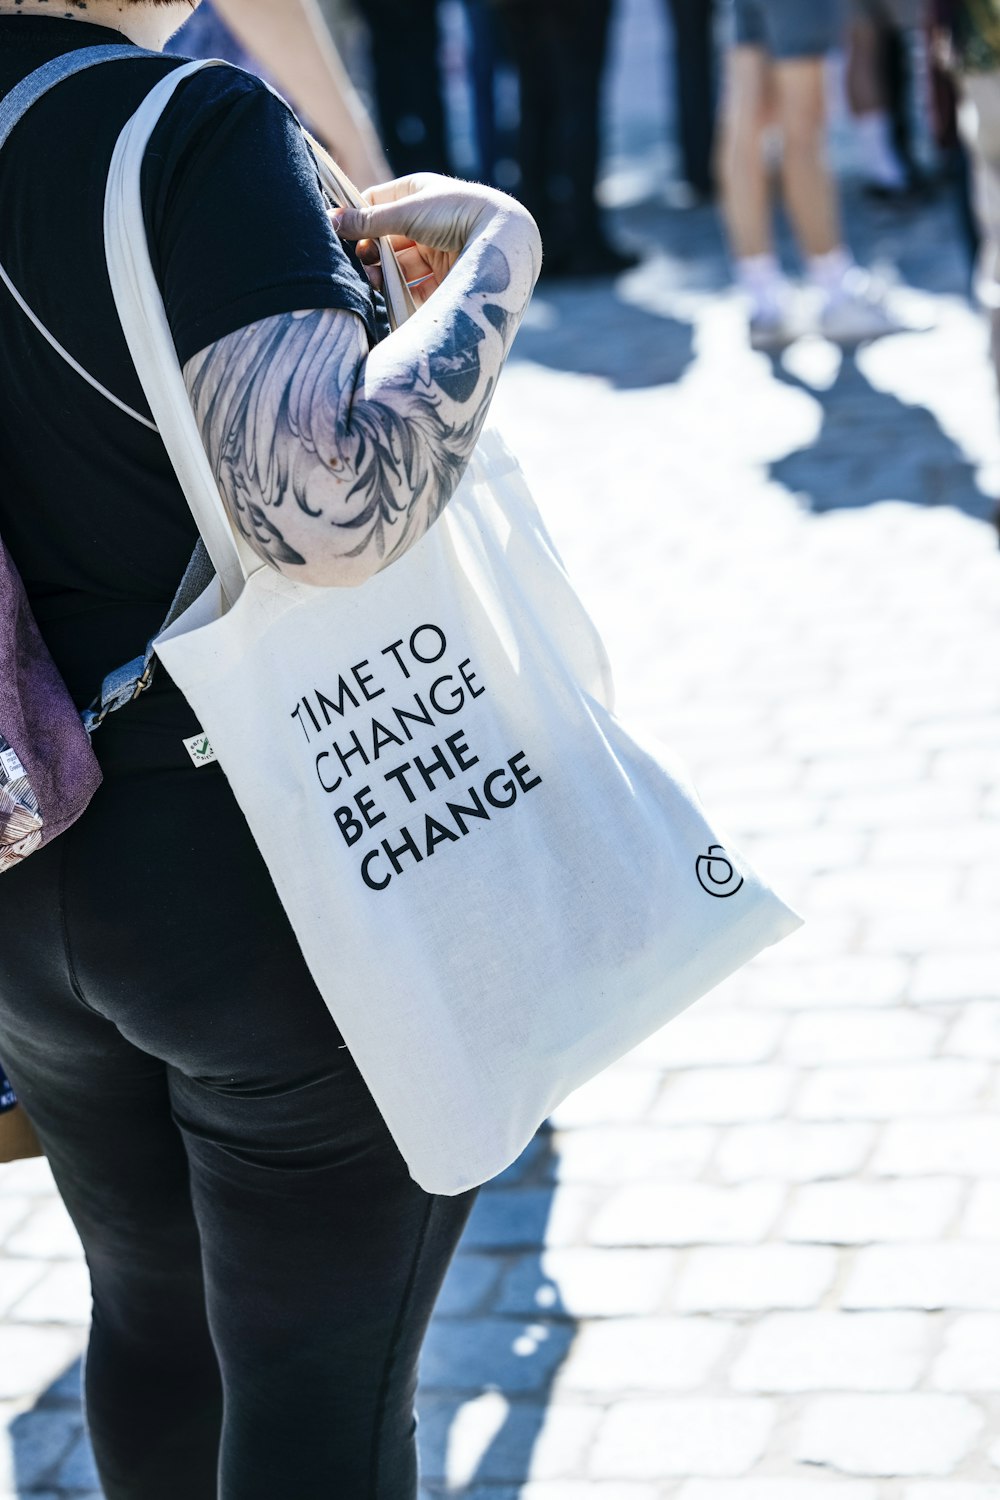 uma mulher carregando uma sacola com uma mensagem